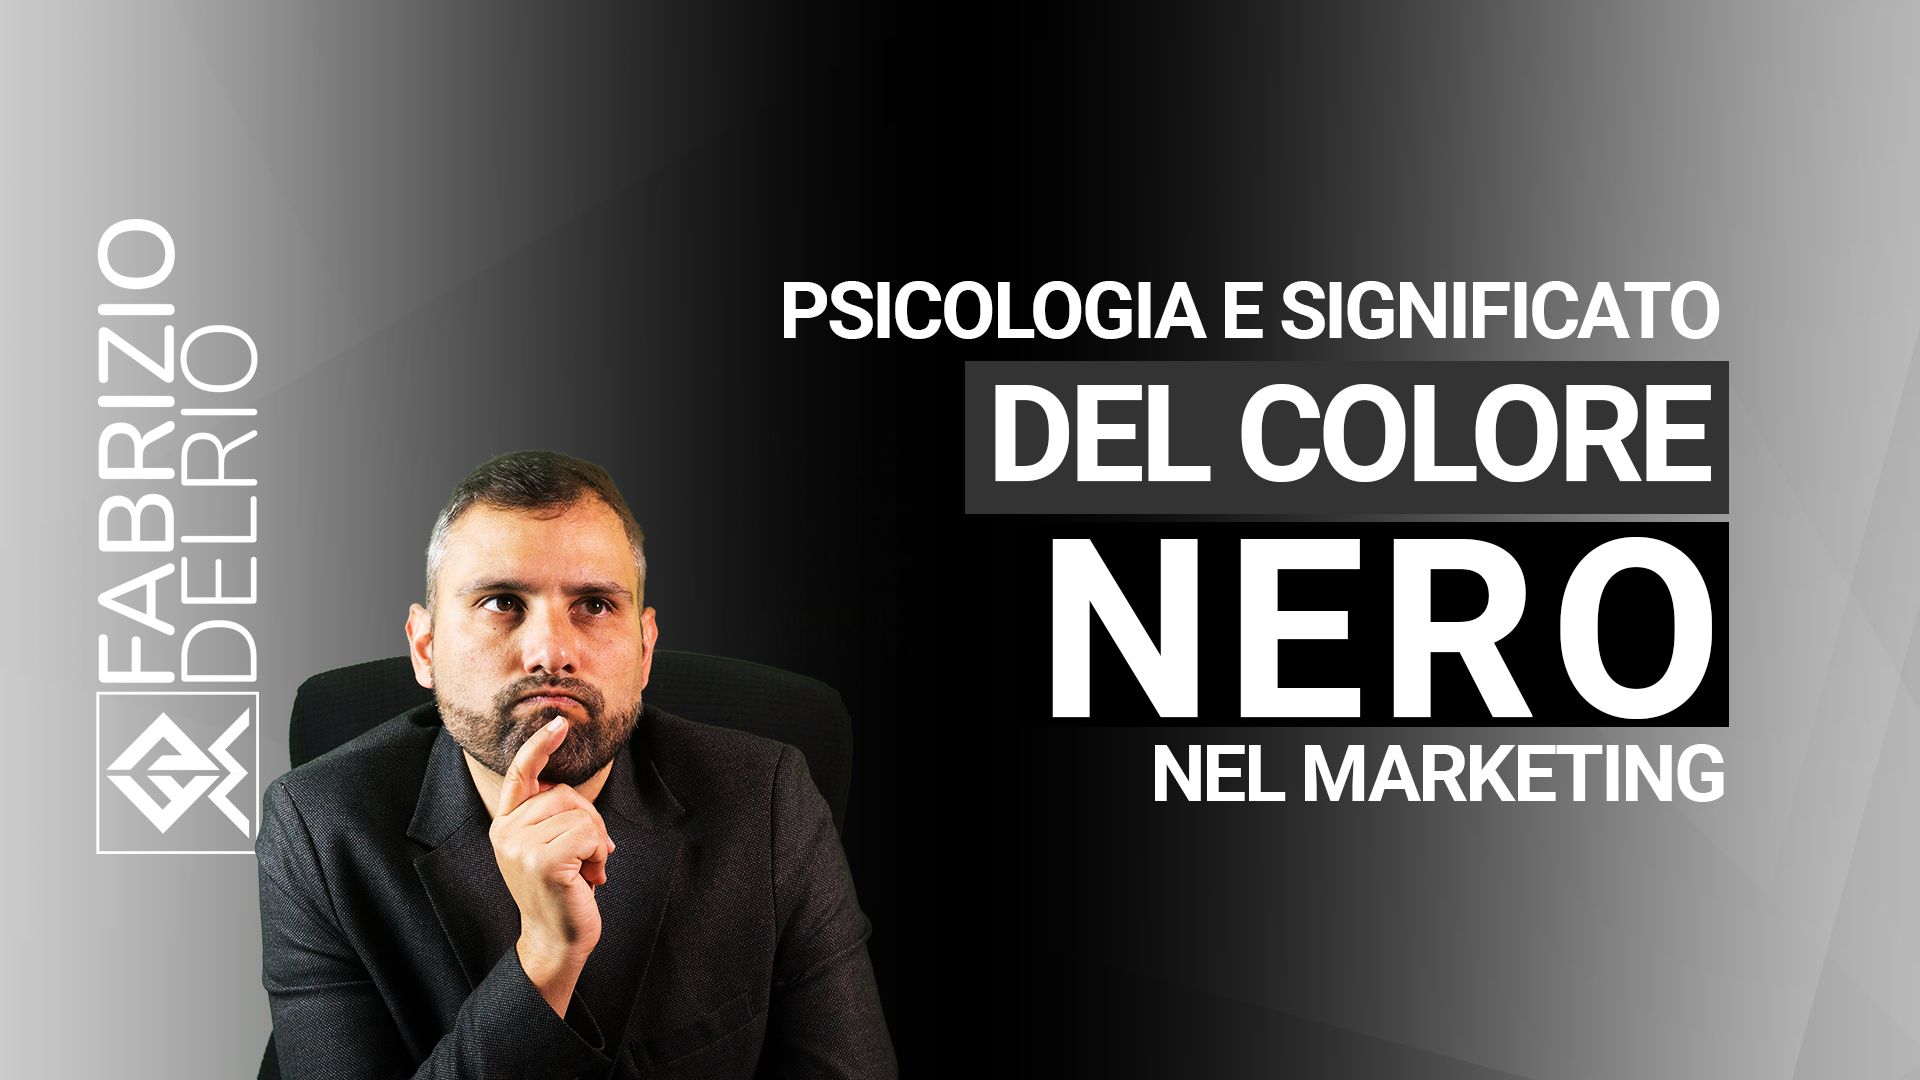 psicologia-significato-del-colore-nero-marketing-youtube.png